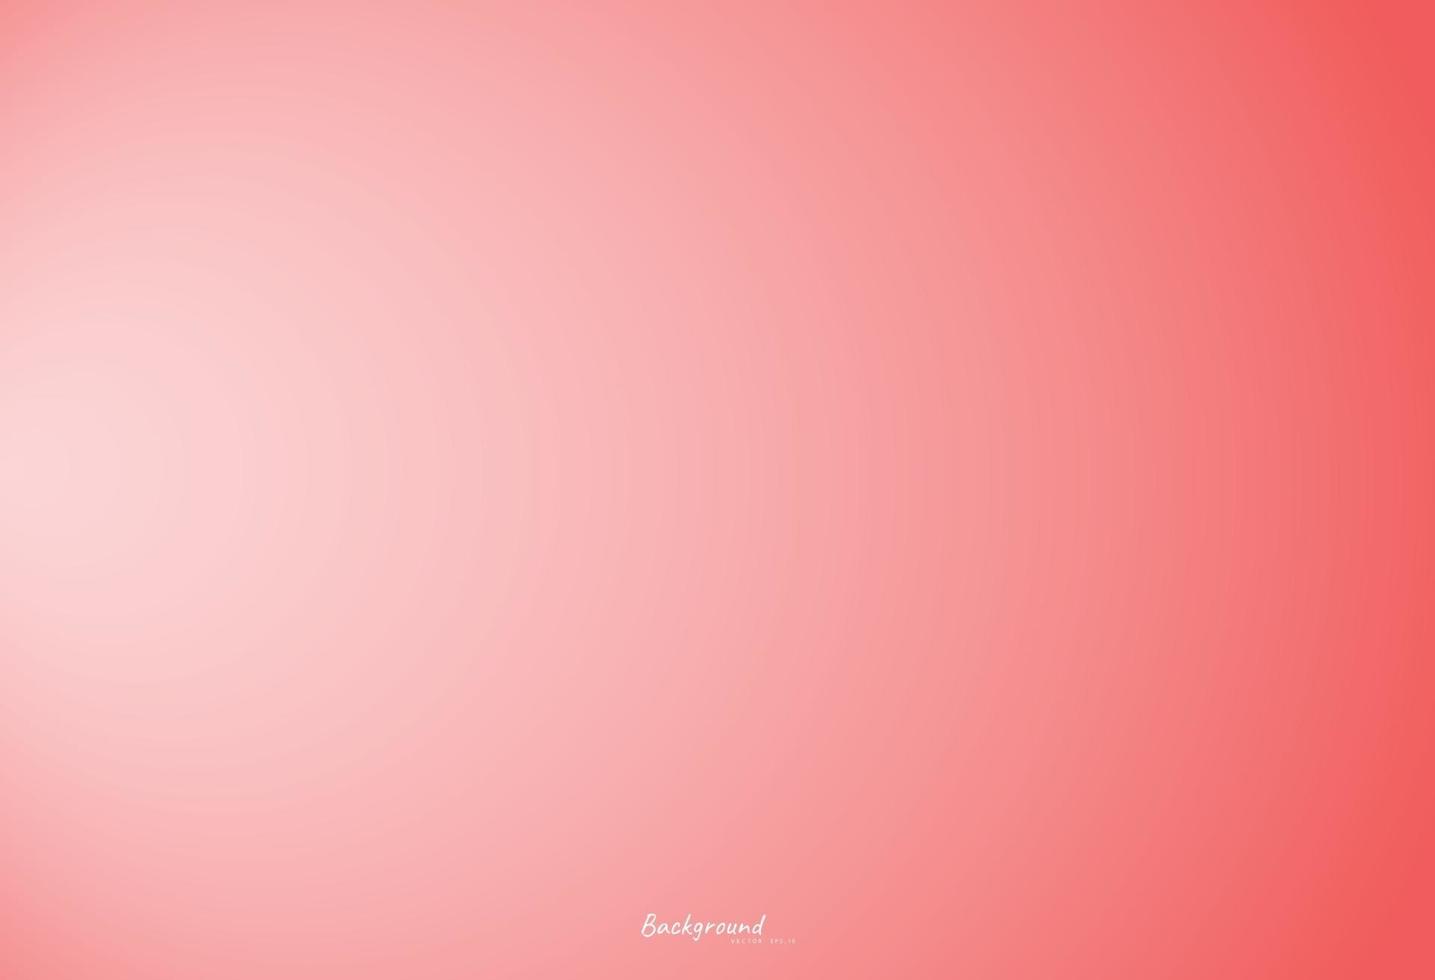 kleurrijke roze achtergrond vector